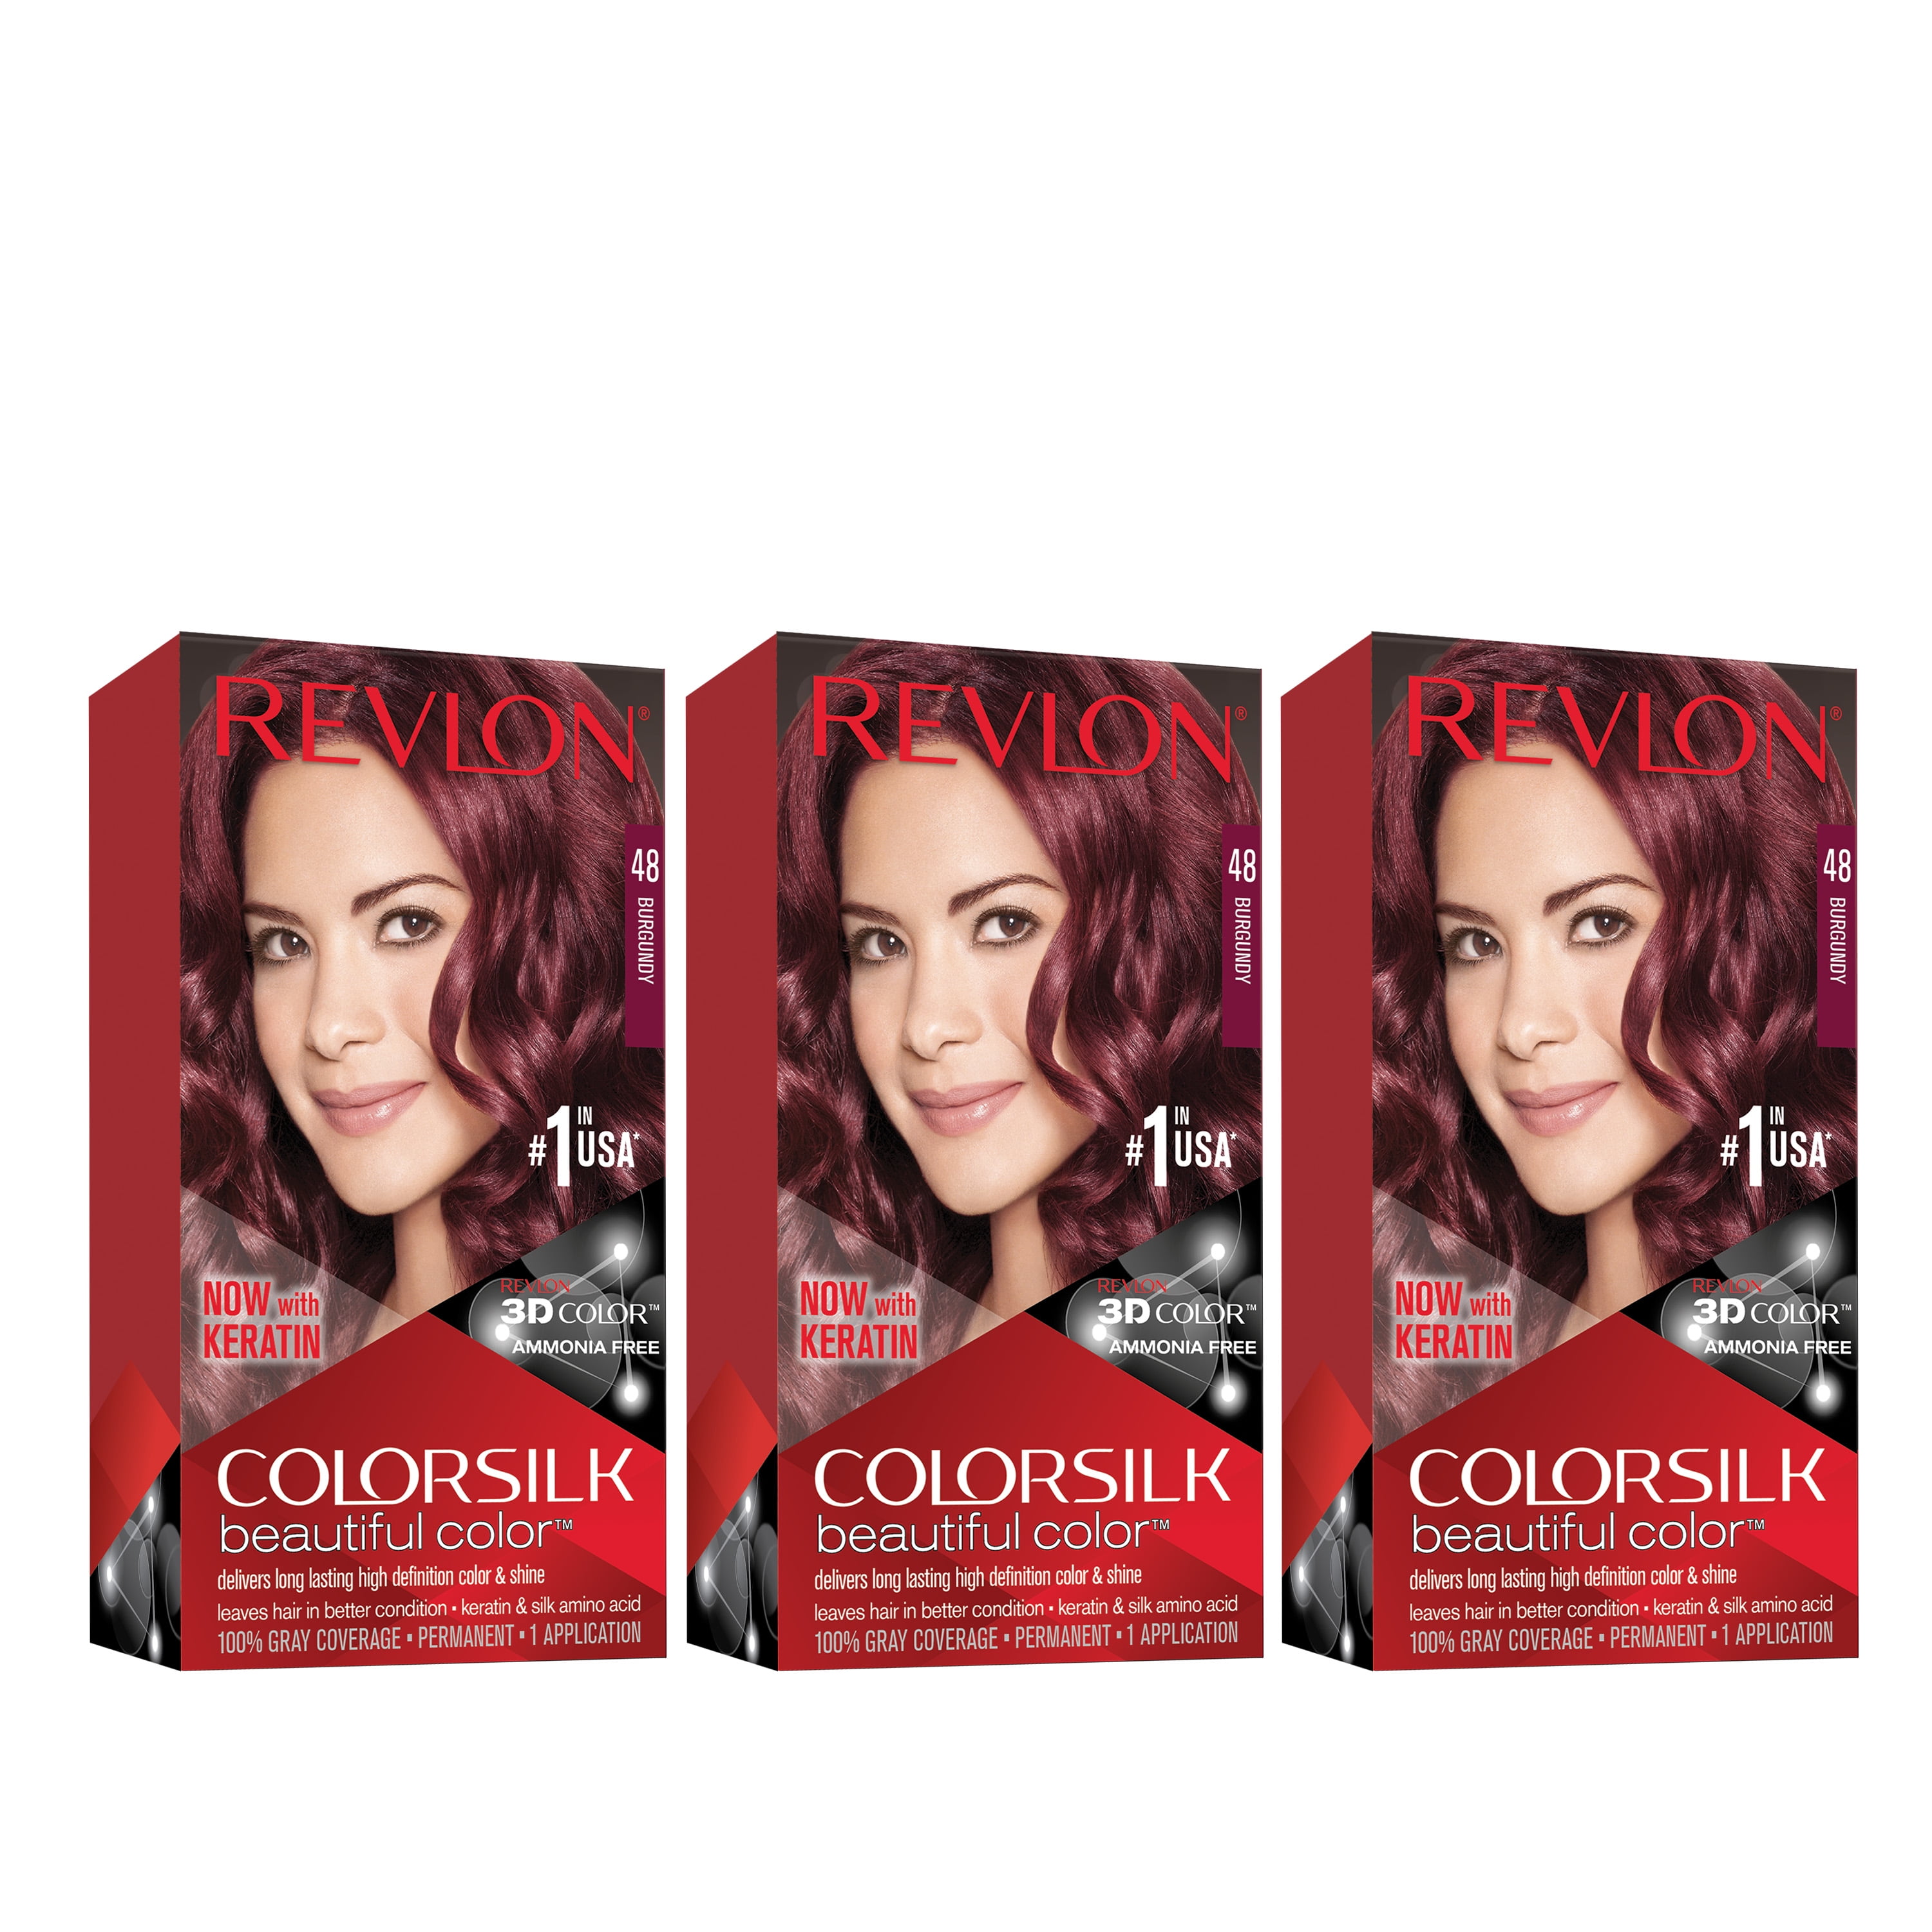 Revlon Colorsilk Beautiful Color Permanent Hair Dye, Dark Brown, At-Home  Full Coverage Application Kit, 48 Burgundy, 3 Pack 